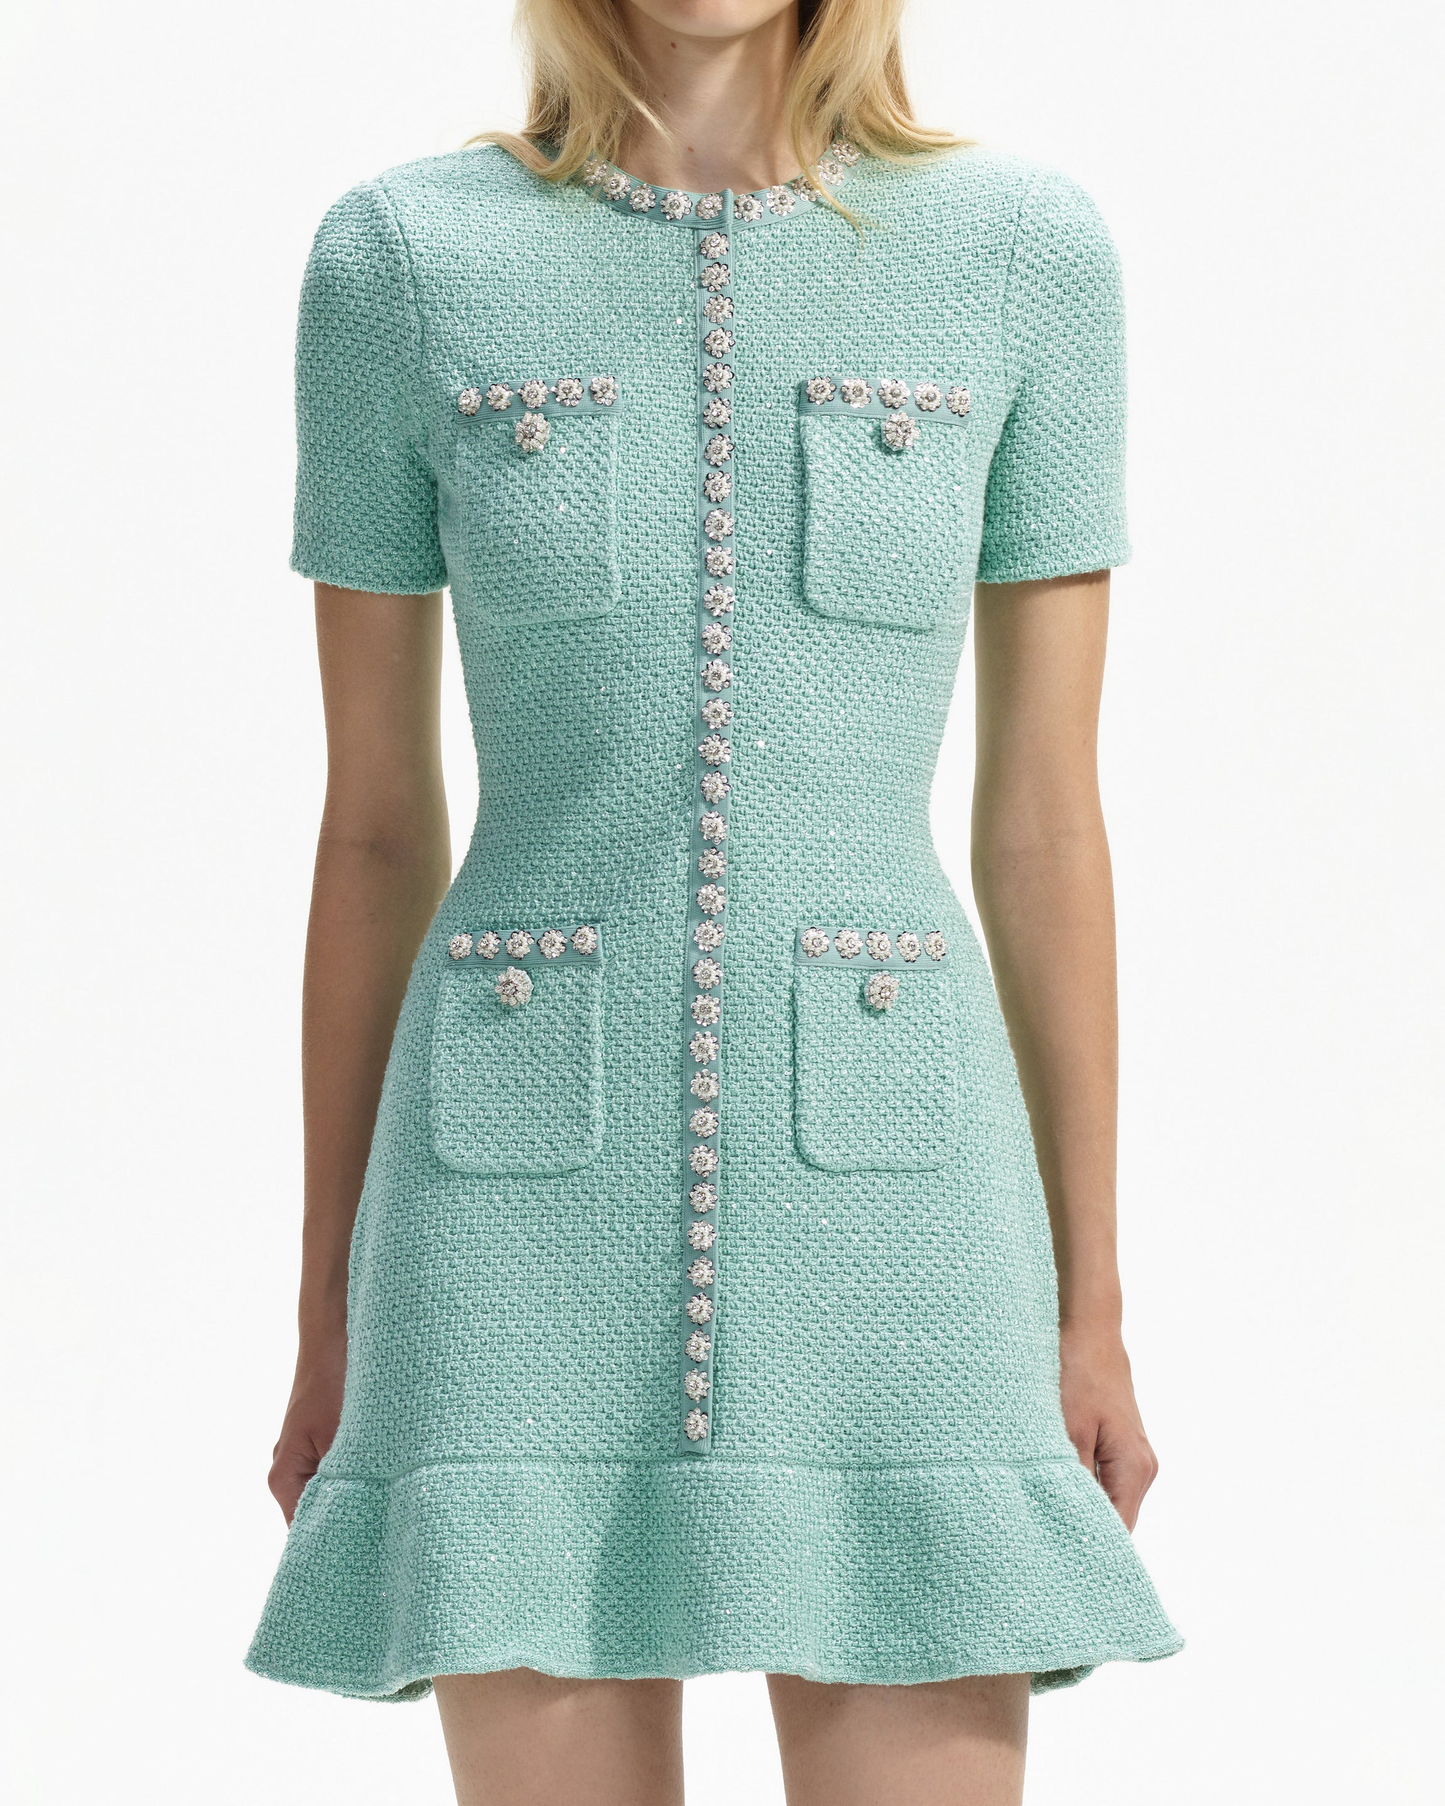 Sequin Knit Mini Dress